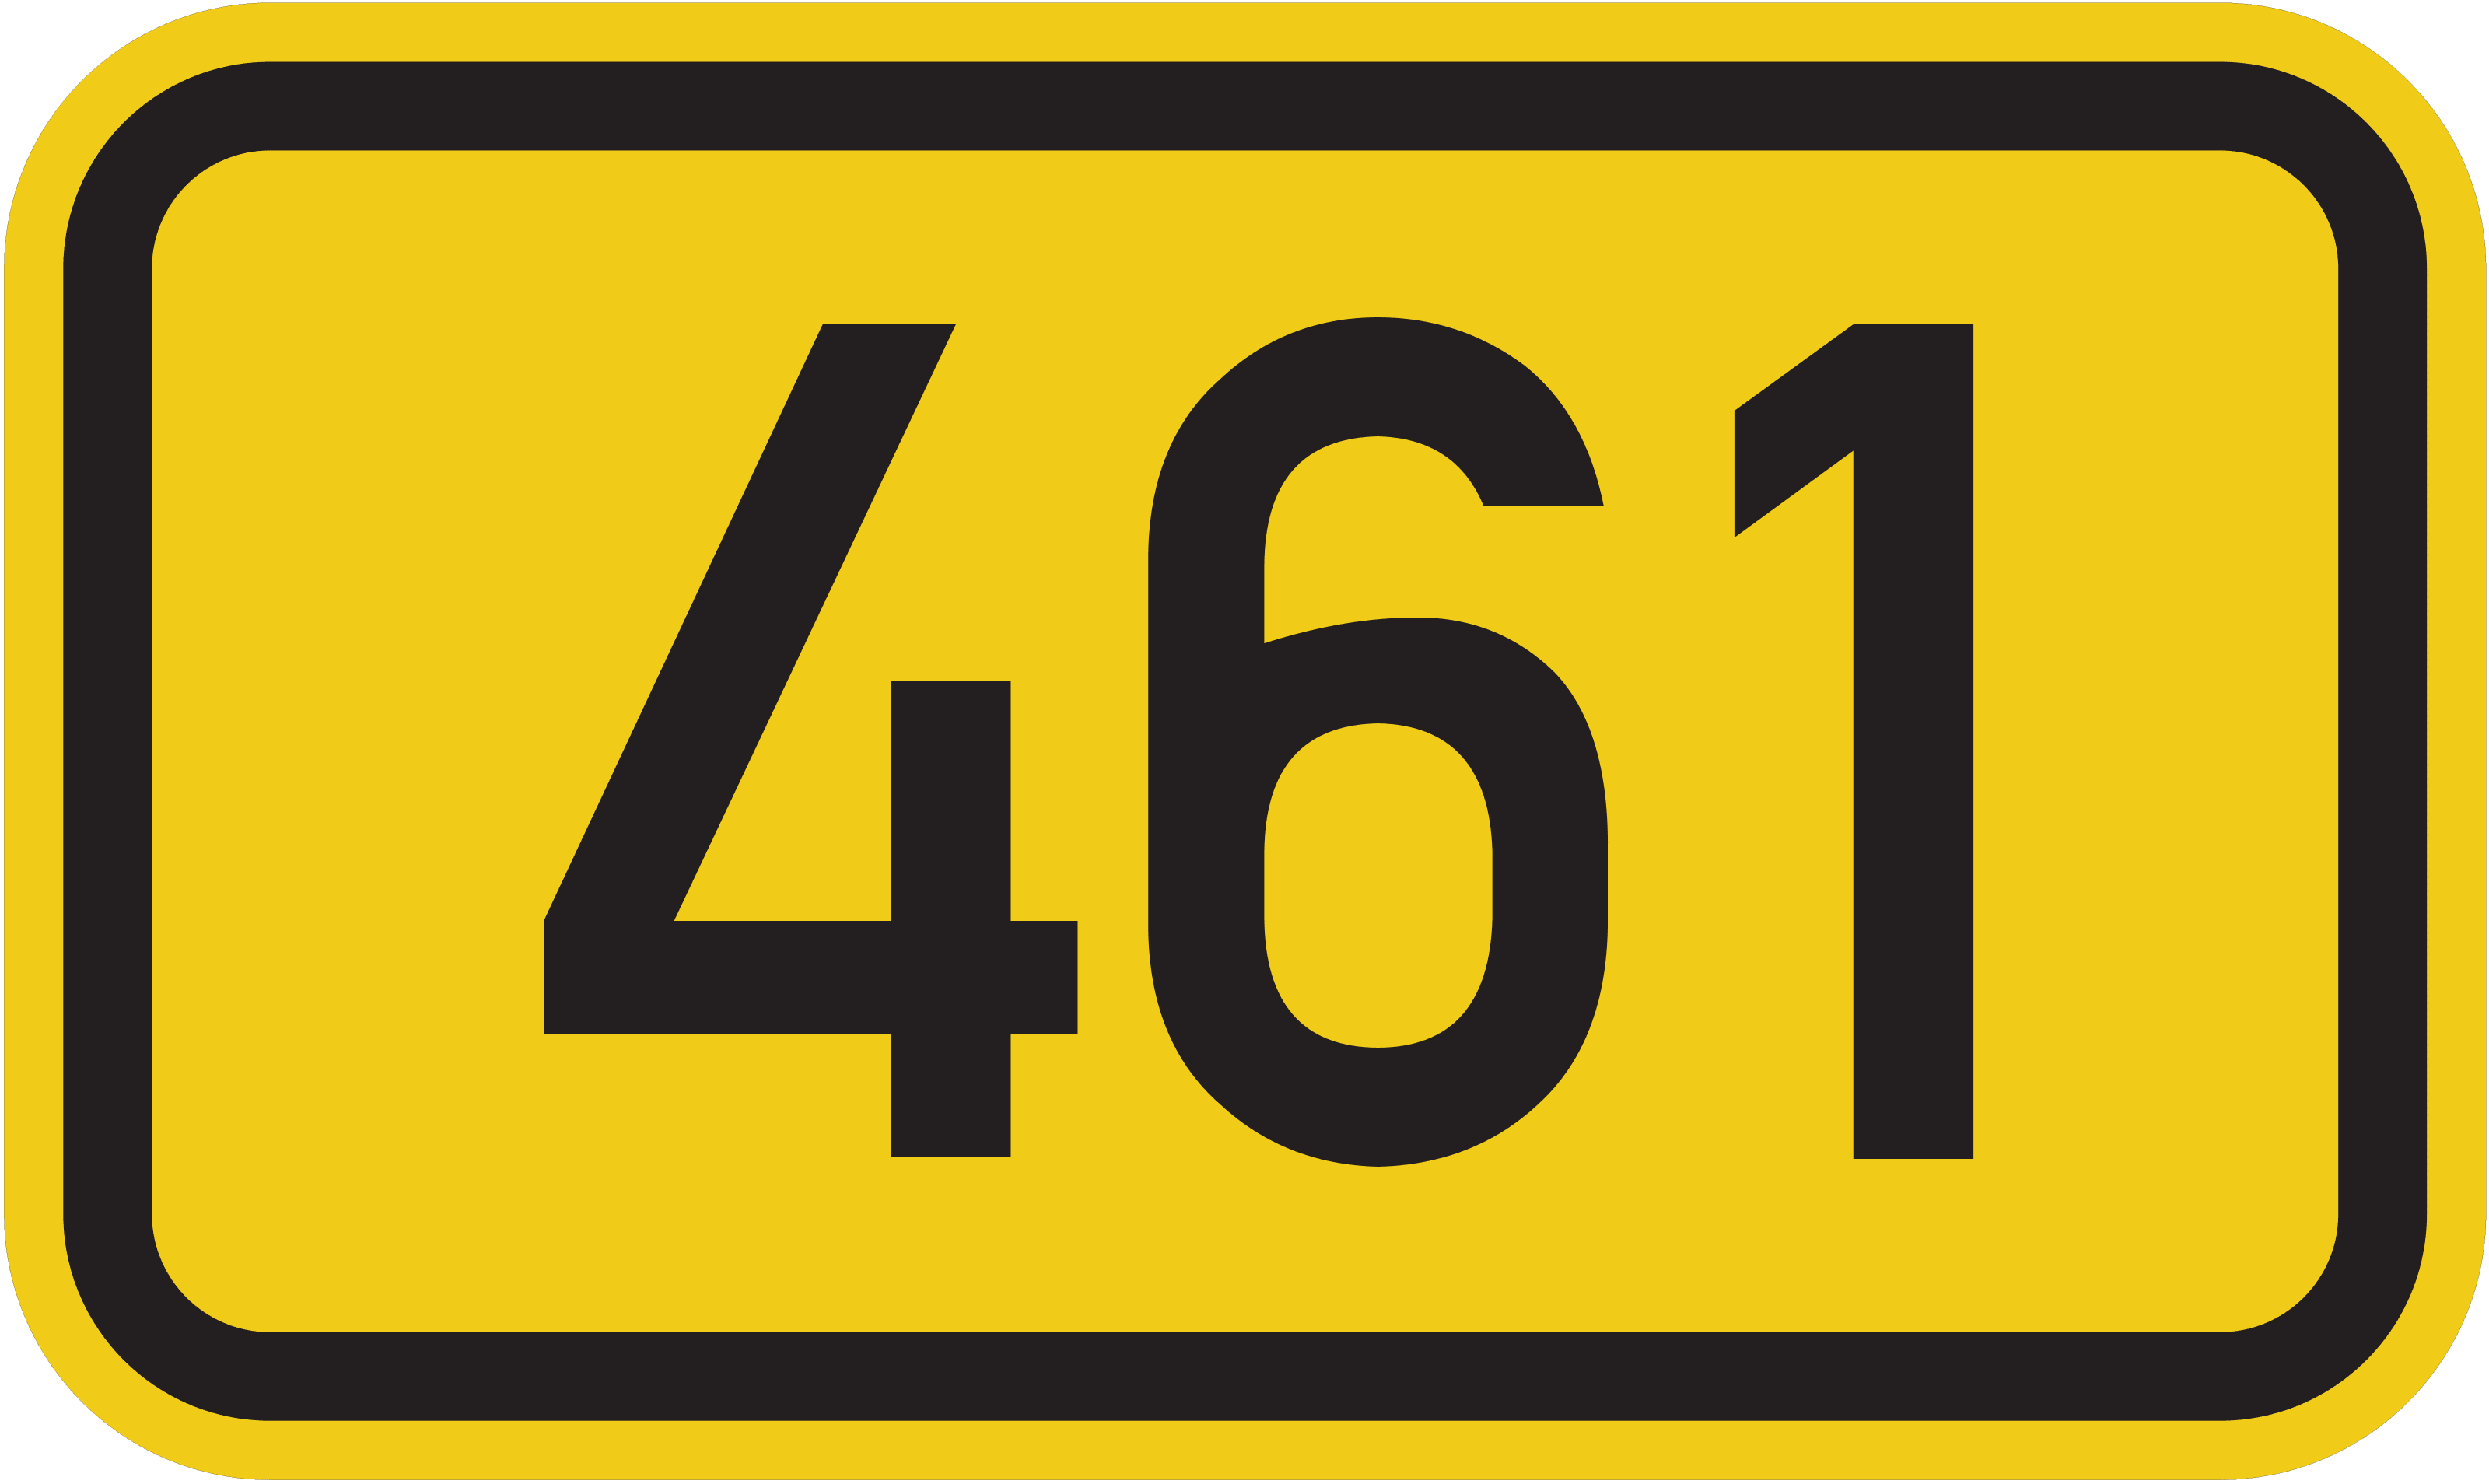 Bundesstraße B 461